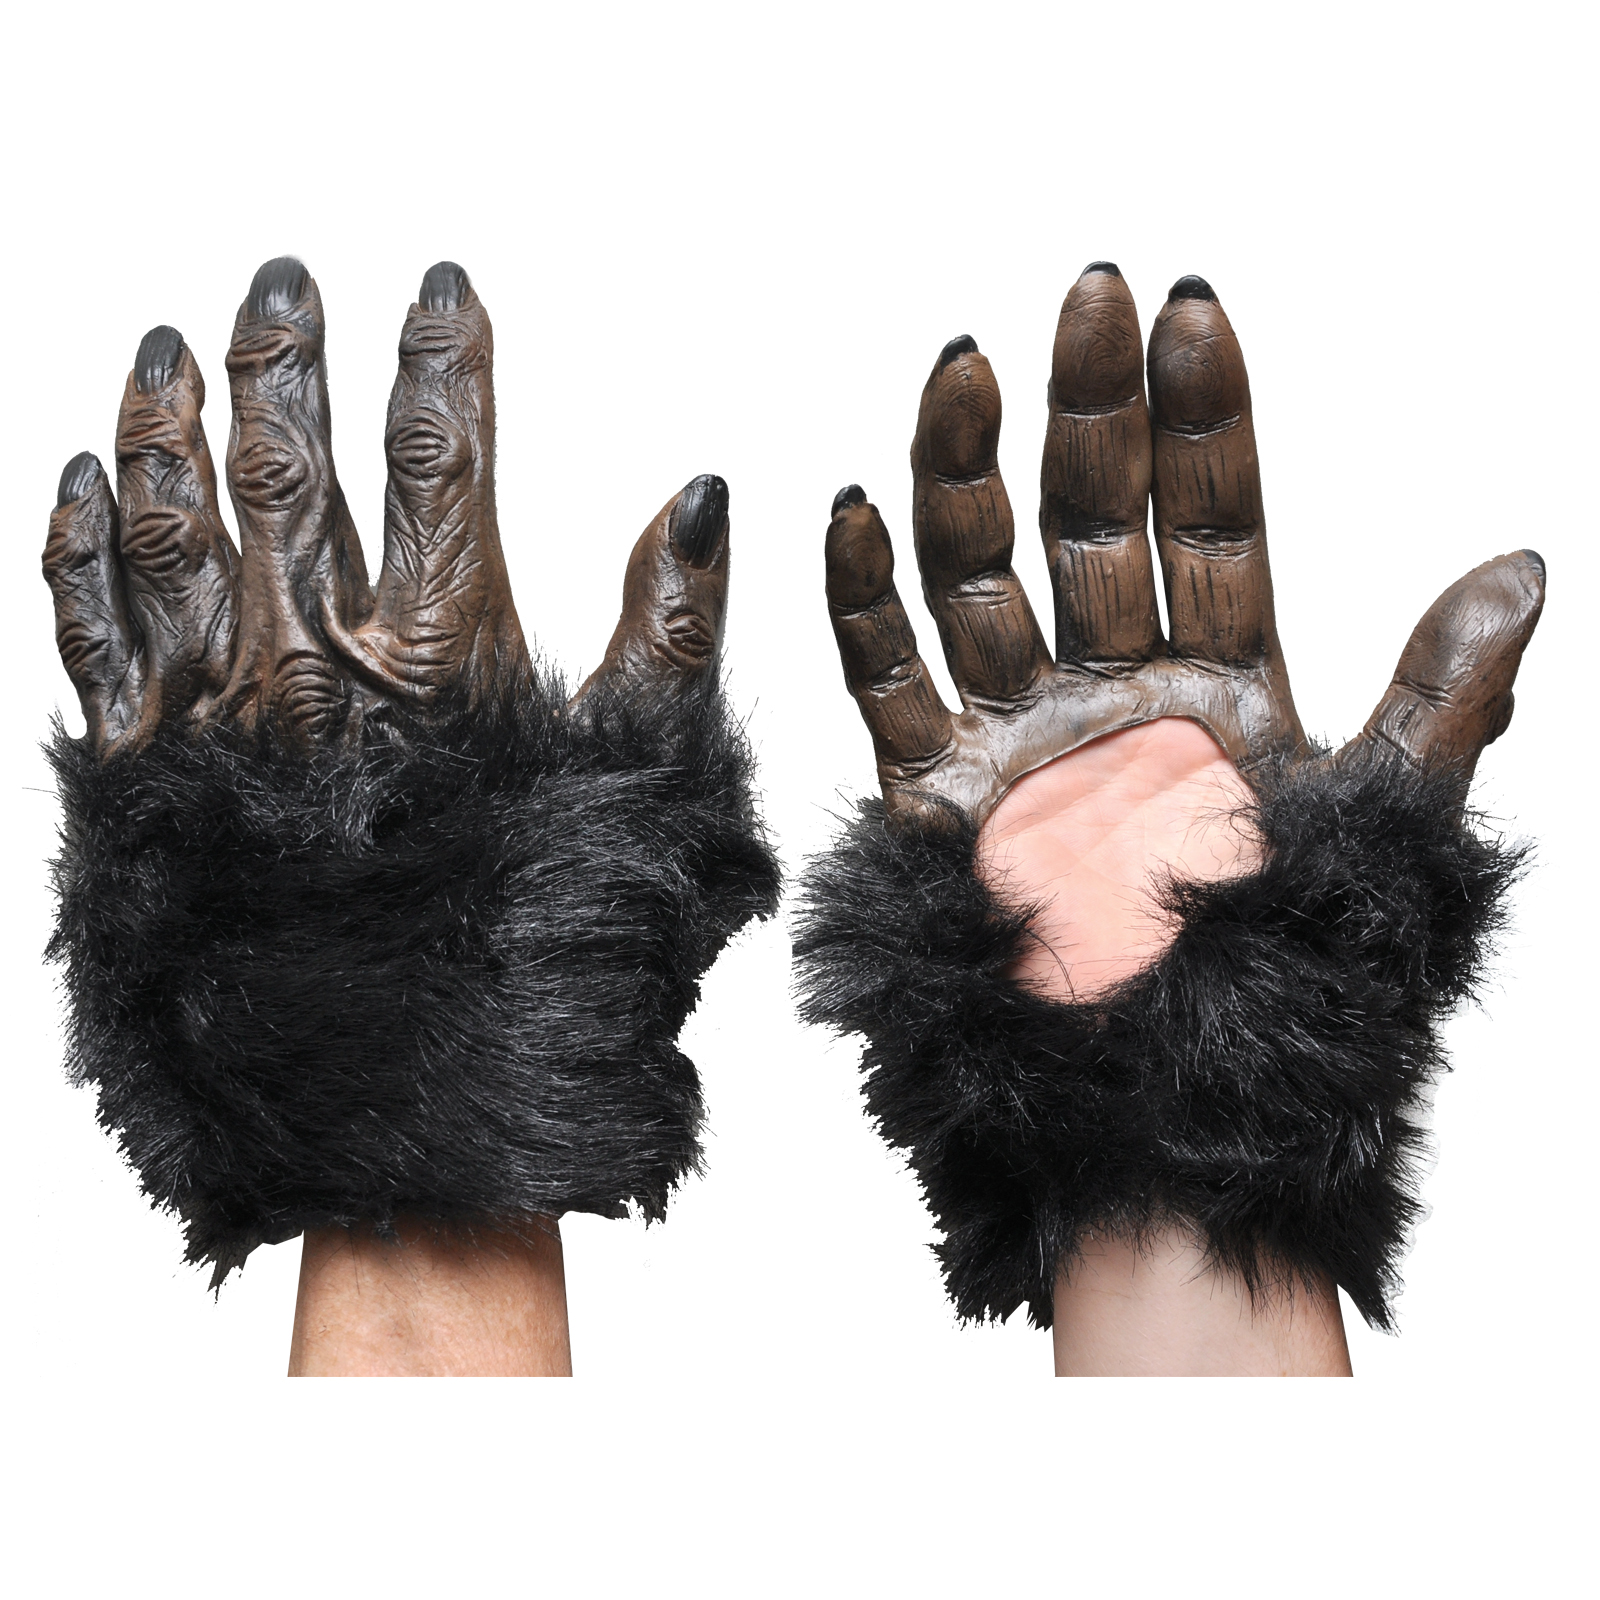 Hands Gorilla Costume Accessory